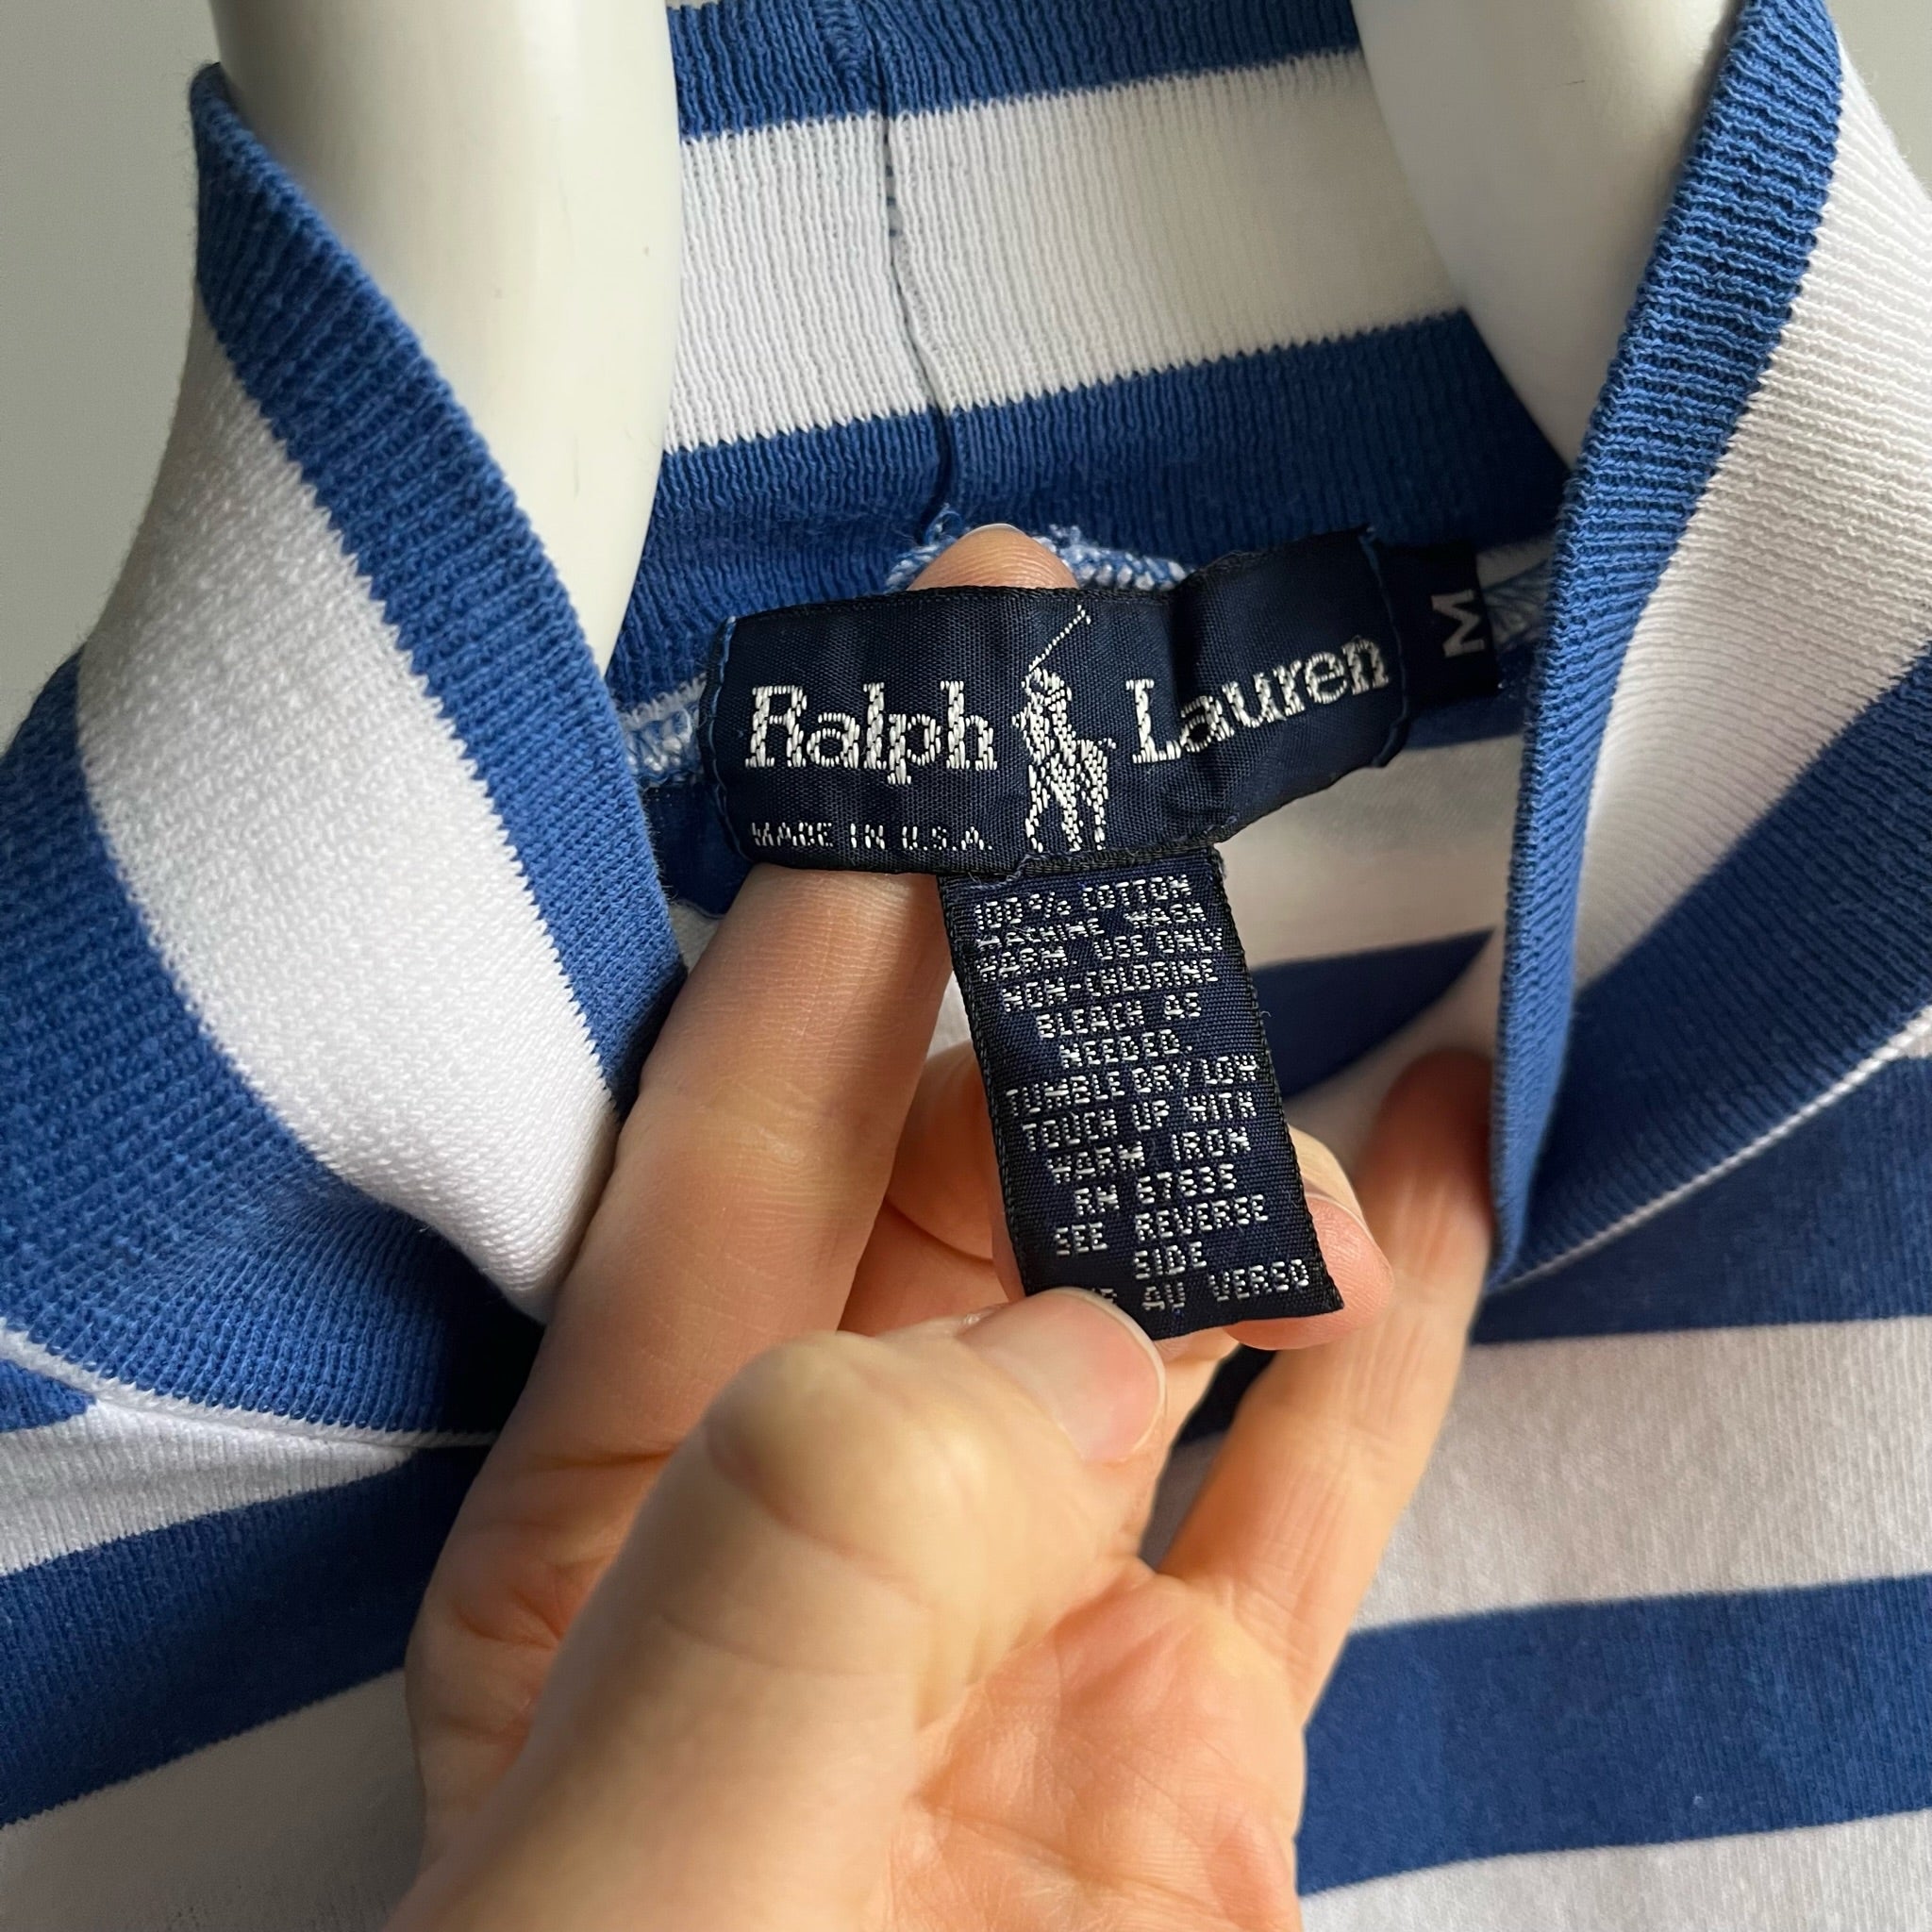 1990s USA Made Ralph Lauren Striped Mock Neck Pocket Long Sleeve T-Shirt